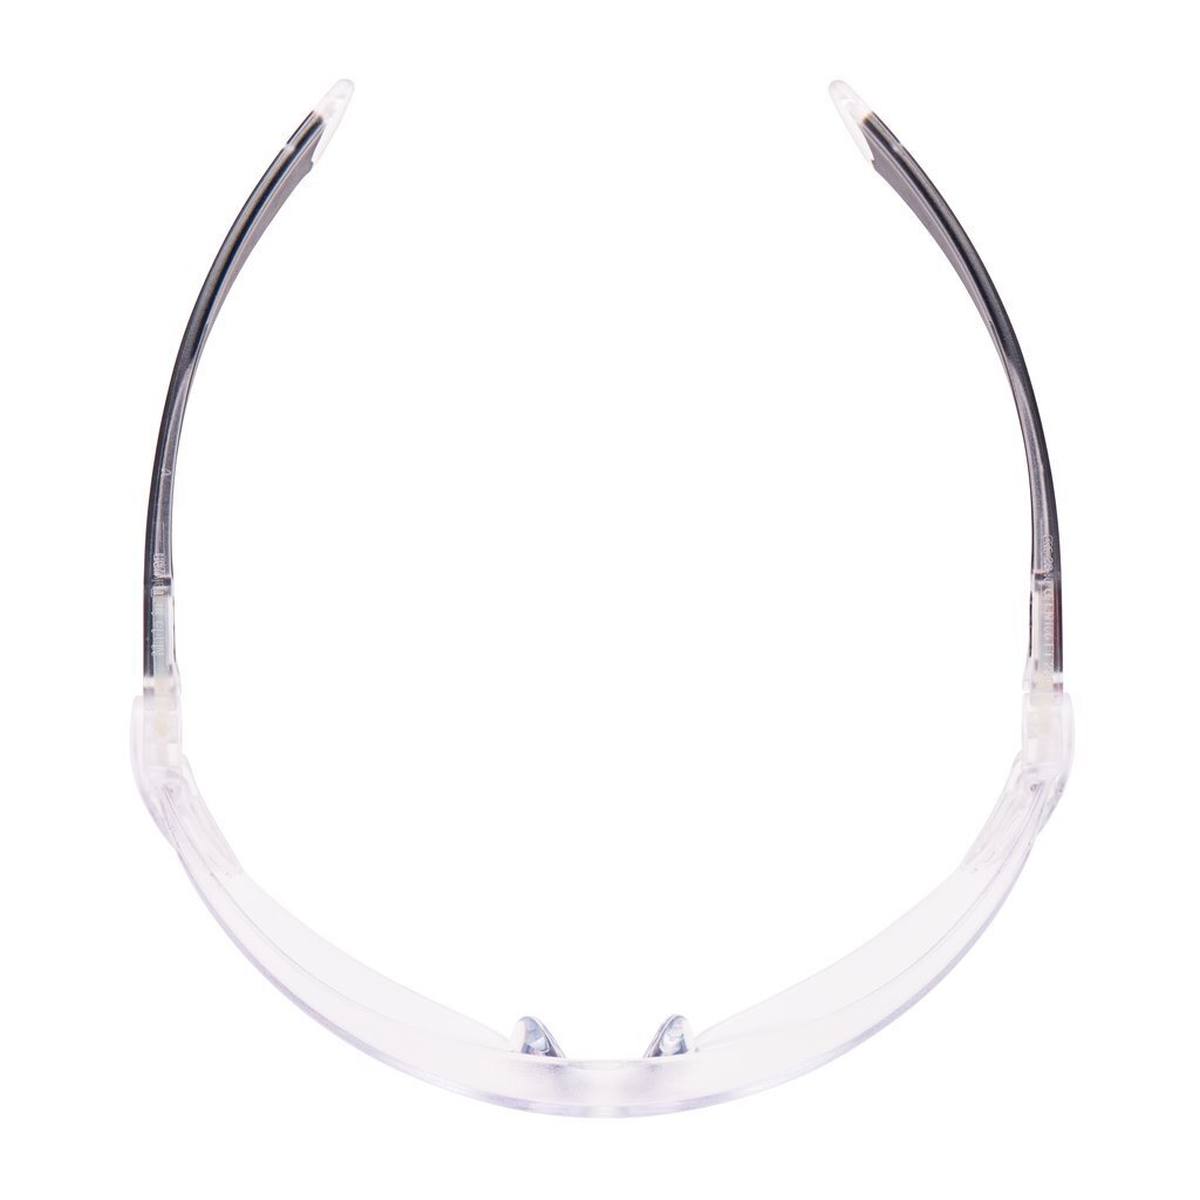 3M 2840 Gafas de protección AS/AF/UV, PC, transparentes, patillas ajustables en longitud e inclinación, terminales blandos